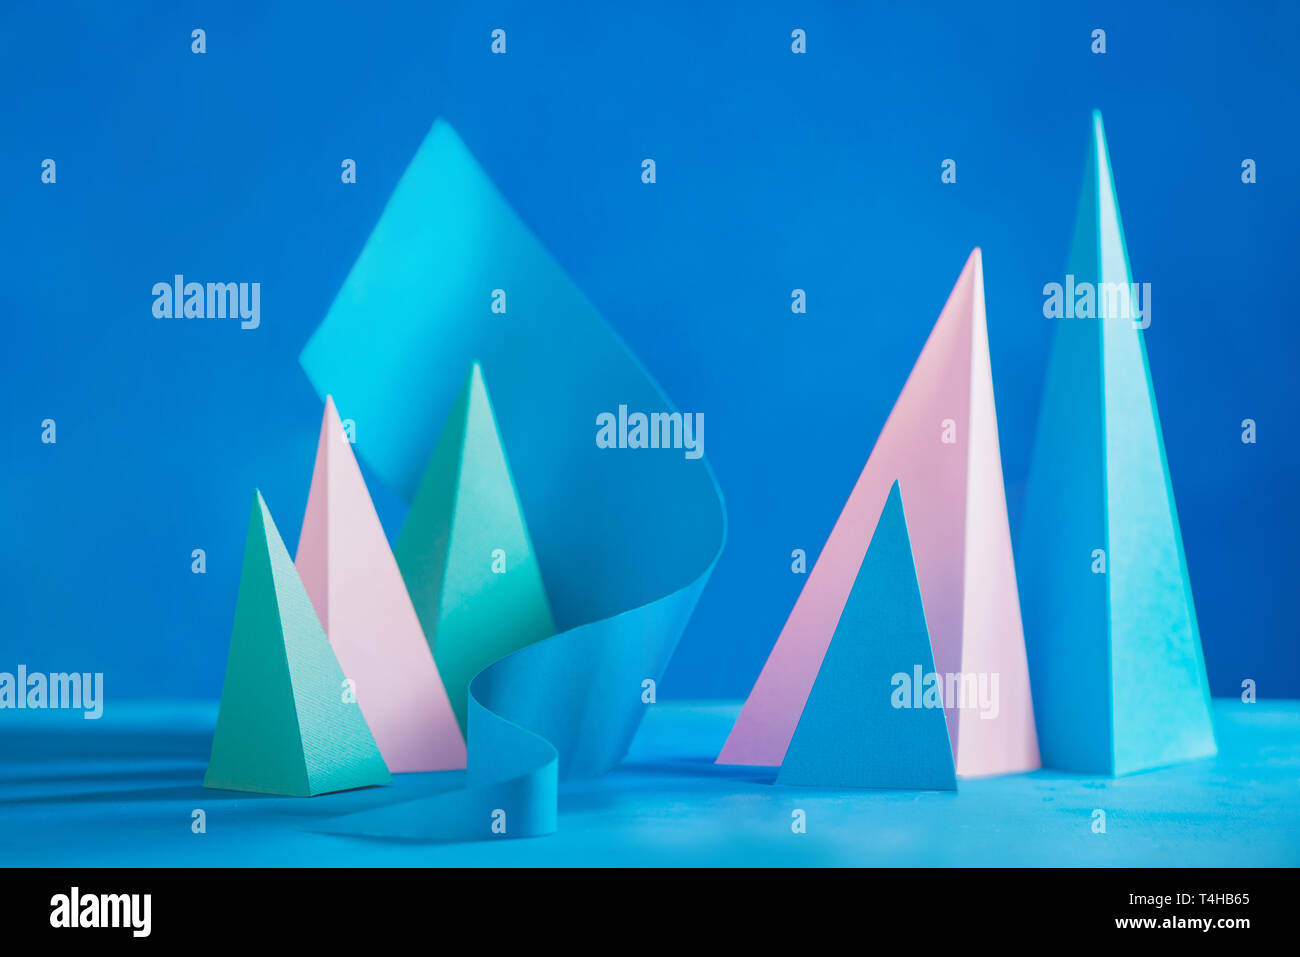 Cabezal de tono pastel abstracto. Origami papercraft escultura en tonos pastel. Plantilla de diseño vibrante con formas modernas y copie el espacio Foto de stock